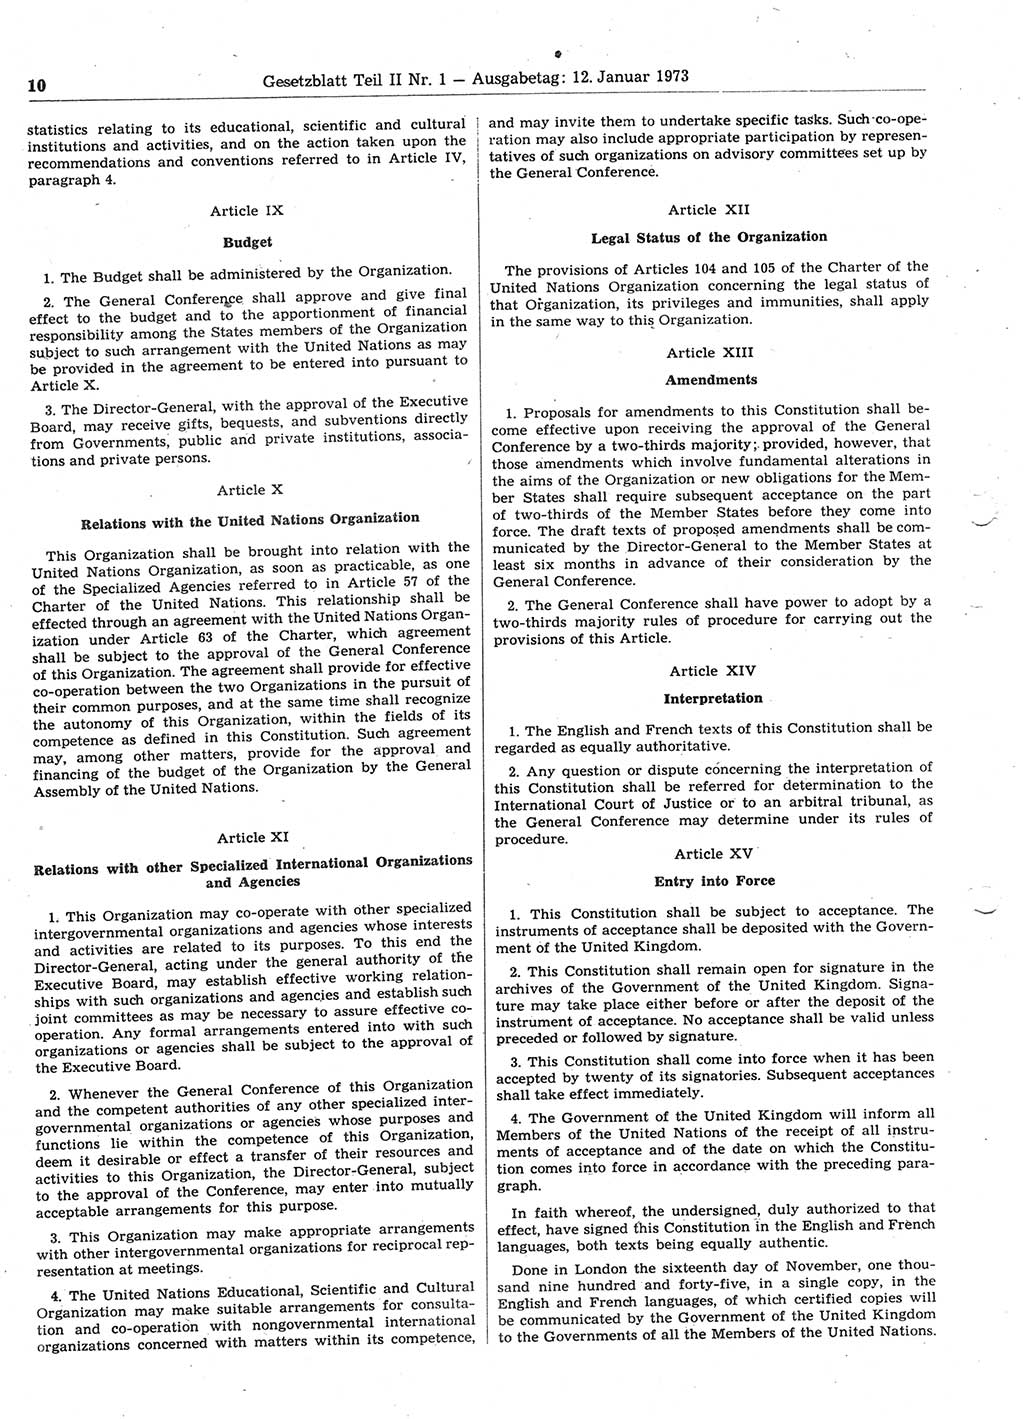 Gesetzblatt (GBl.) der Deutschen Demokratischen Republik (DDR) Teil ⅠⅠ 1973, Seite 10 (GBl. DDR ⅠⅠ 1973, S. 10)